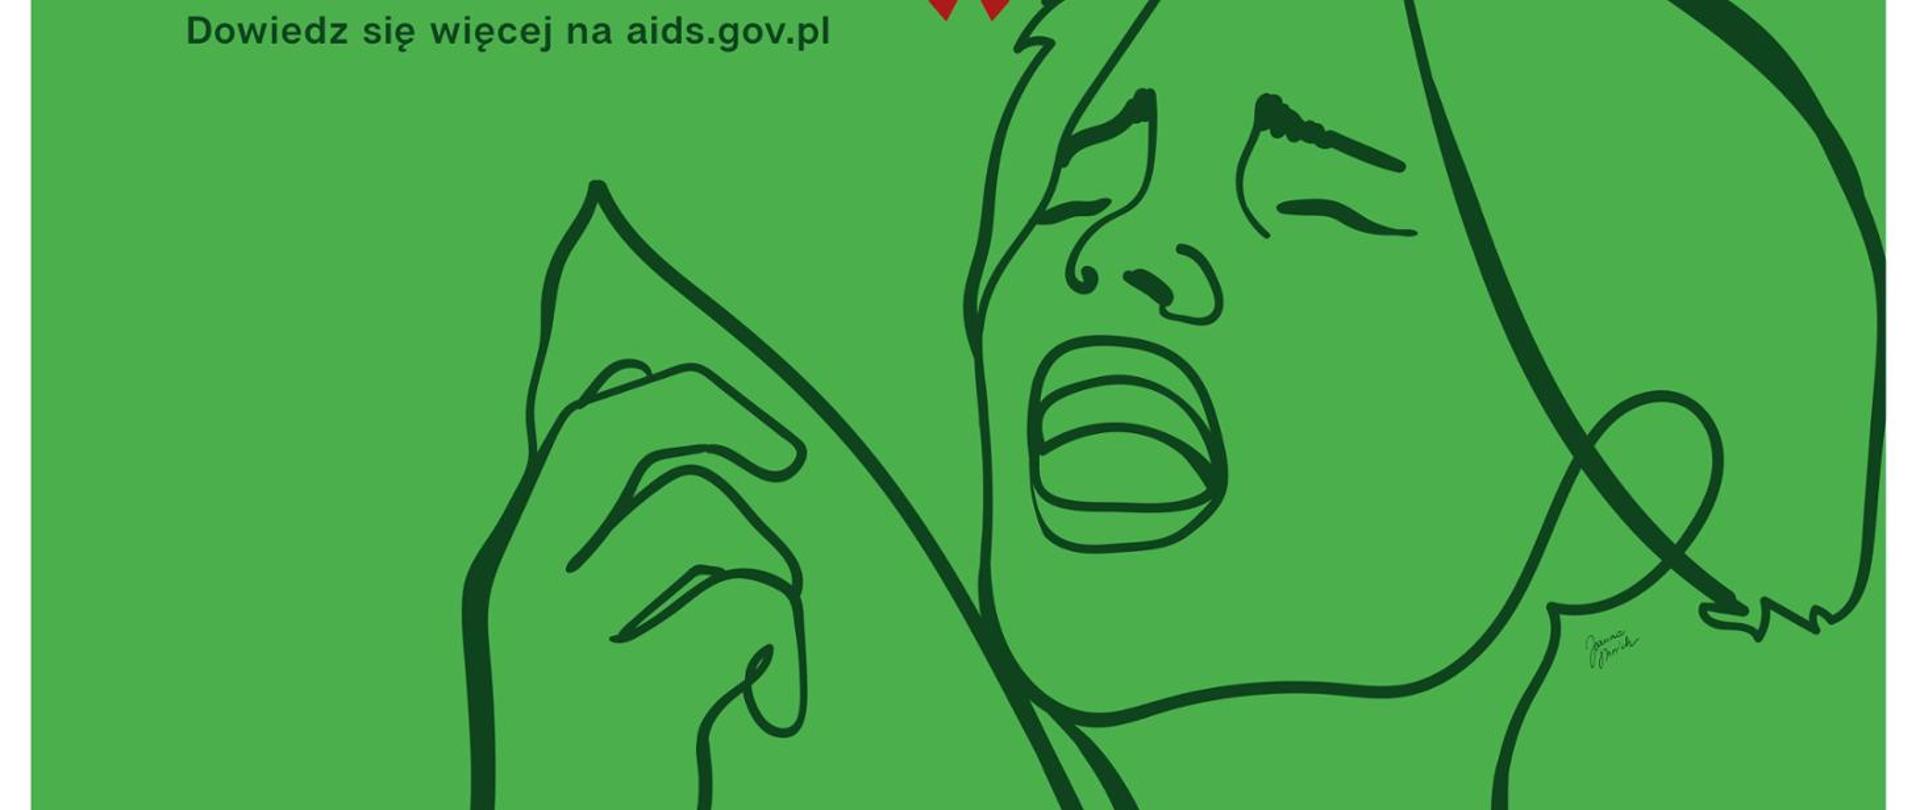 Kampania „Czy wiesz, że…” nowa odsłona kampanii profilaktycznej HIV/AIDS